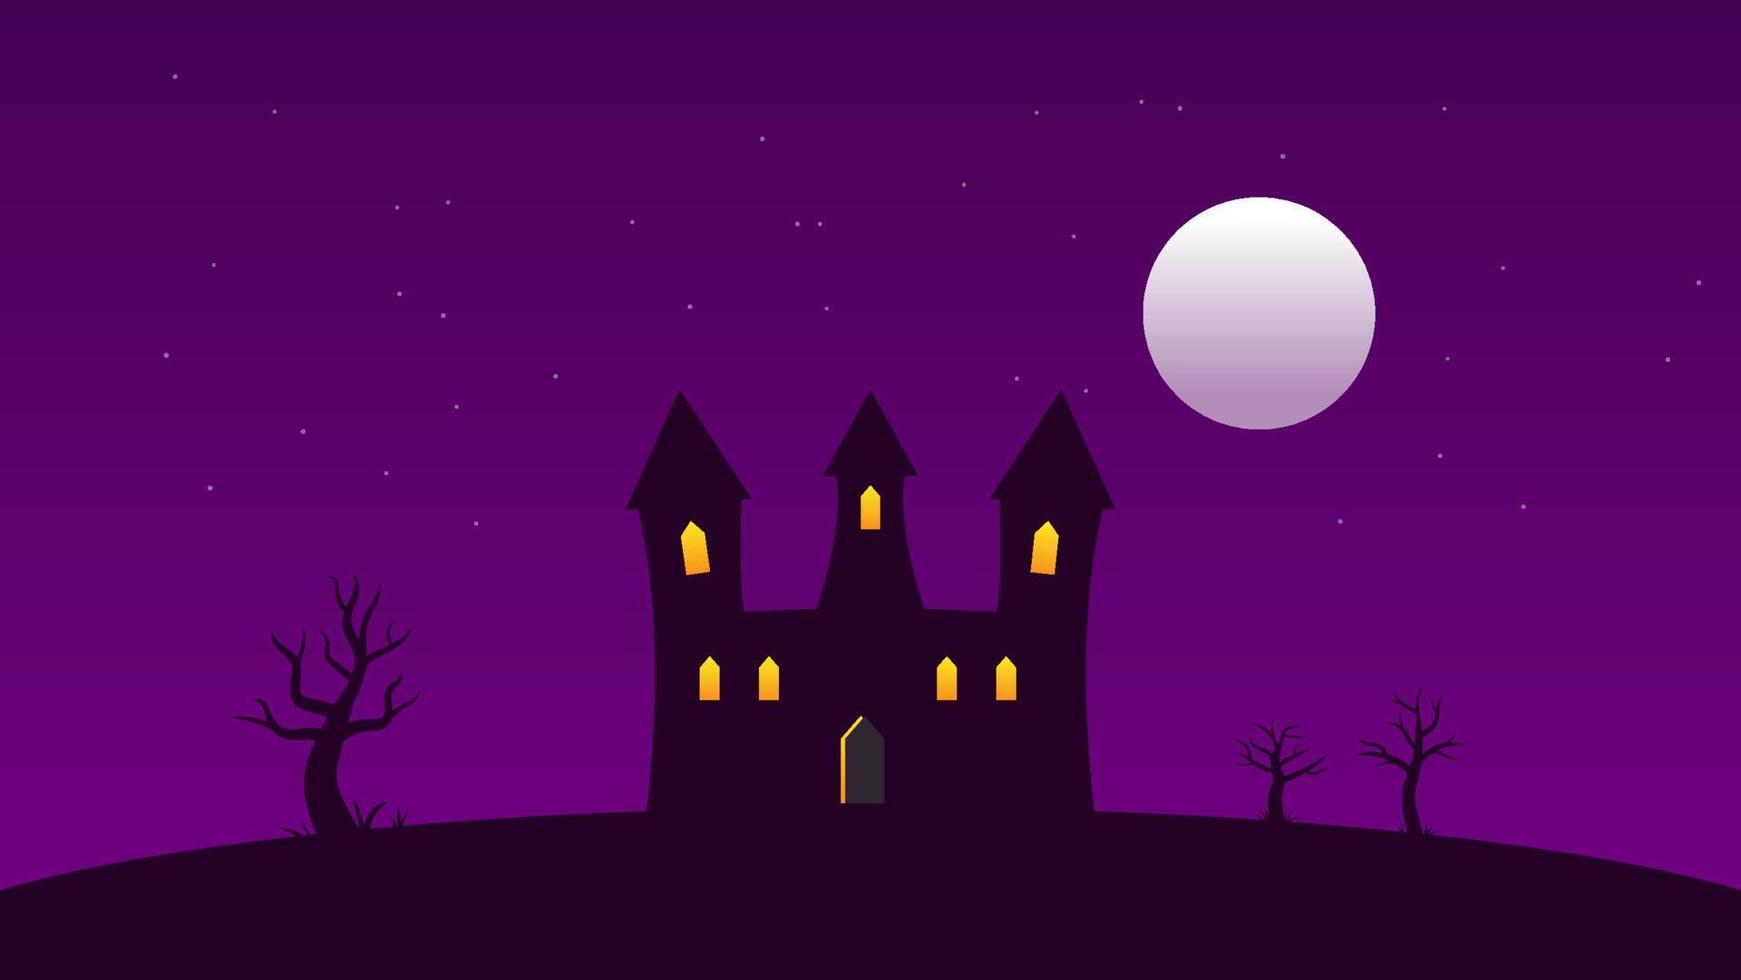 castello con finestra illuminata su colline con alberi e luna piena e stella bianca scintillante sul cielo scuro. scena del fumetto del paesaggio con lo spazio della copia vettore